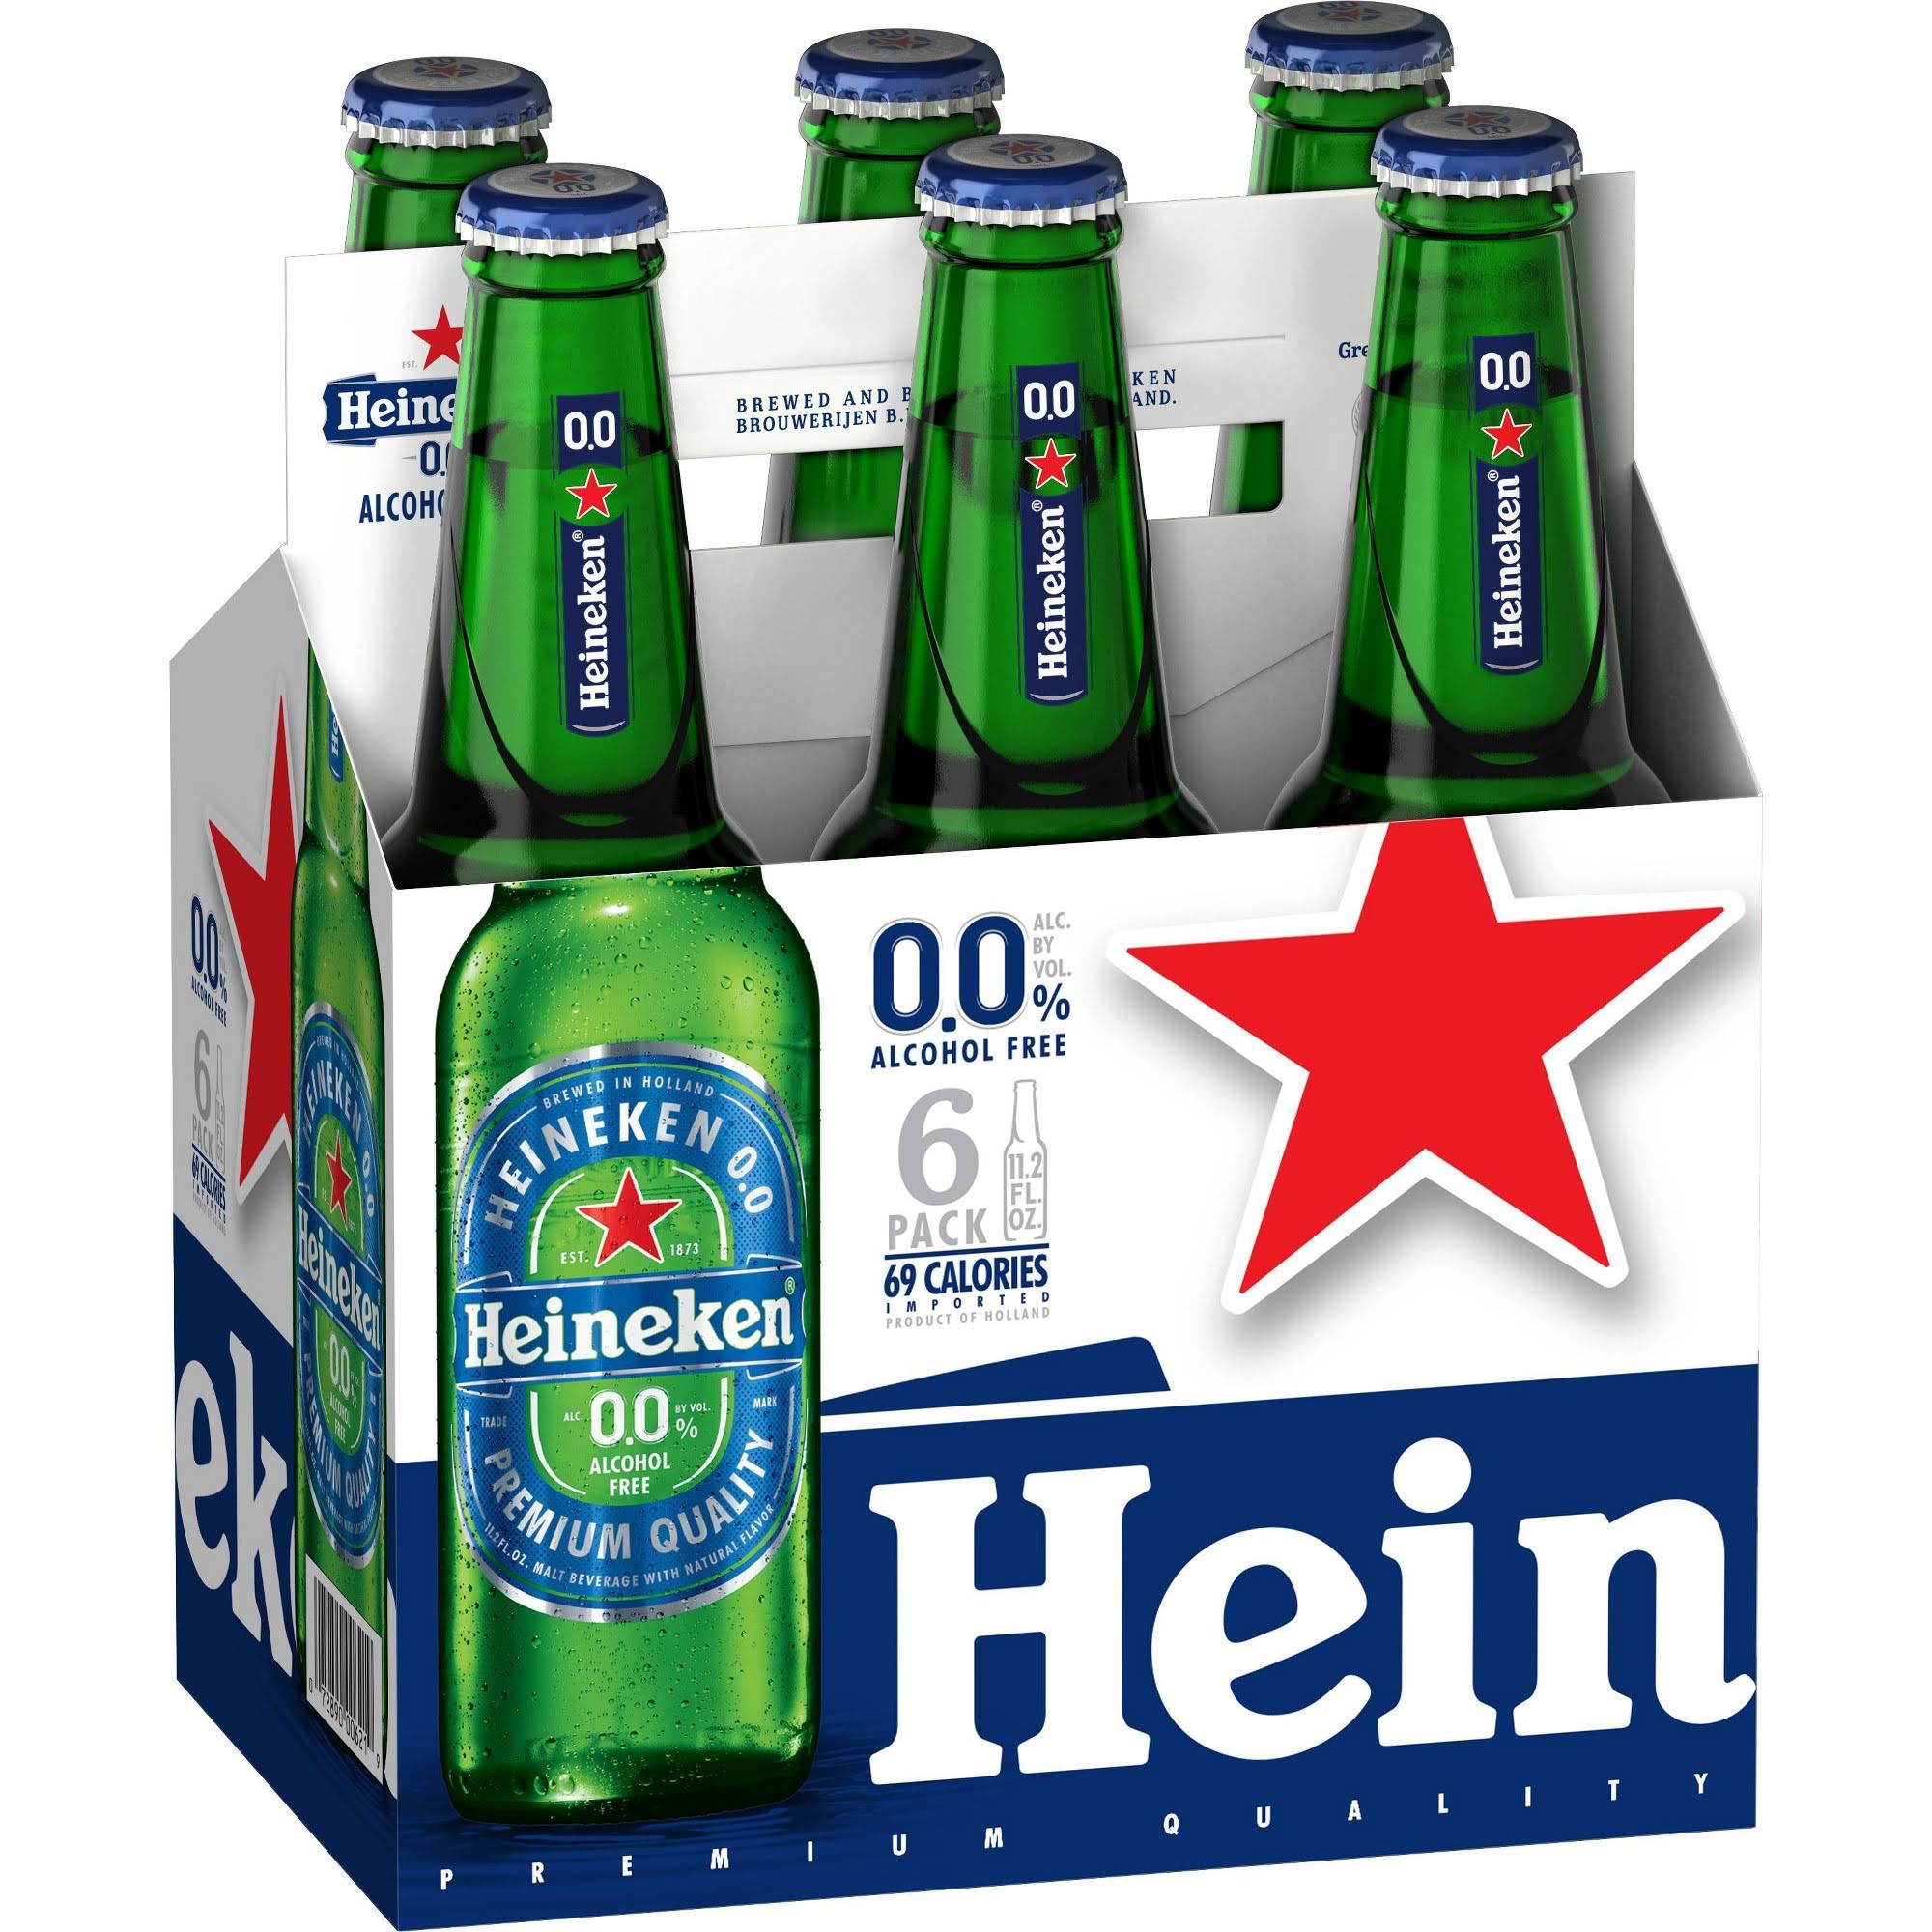 Heineken Beer, Alcohol Free, 6 Pack - 6 pack, 11.2 fl oz bottles